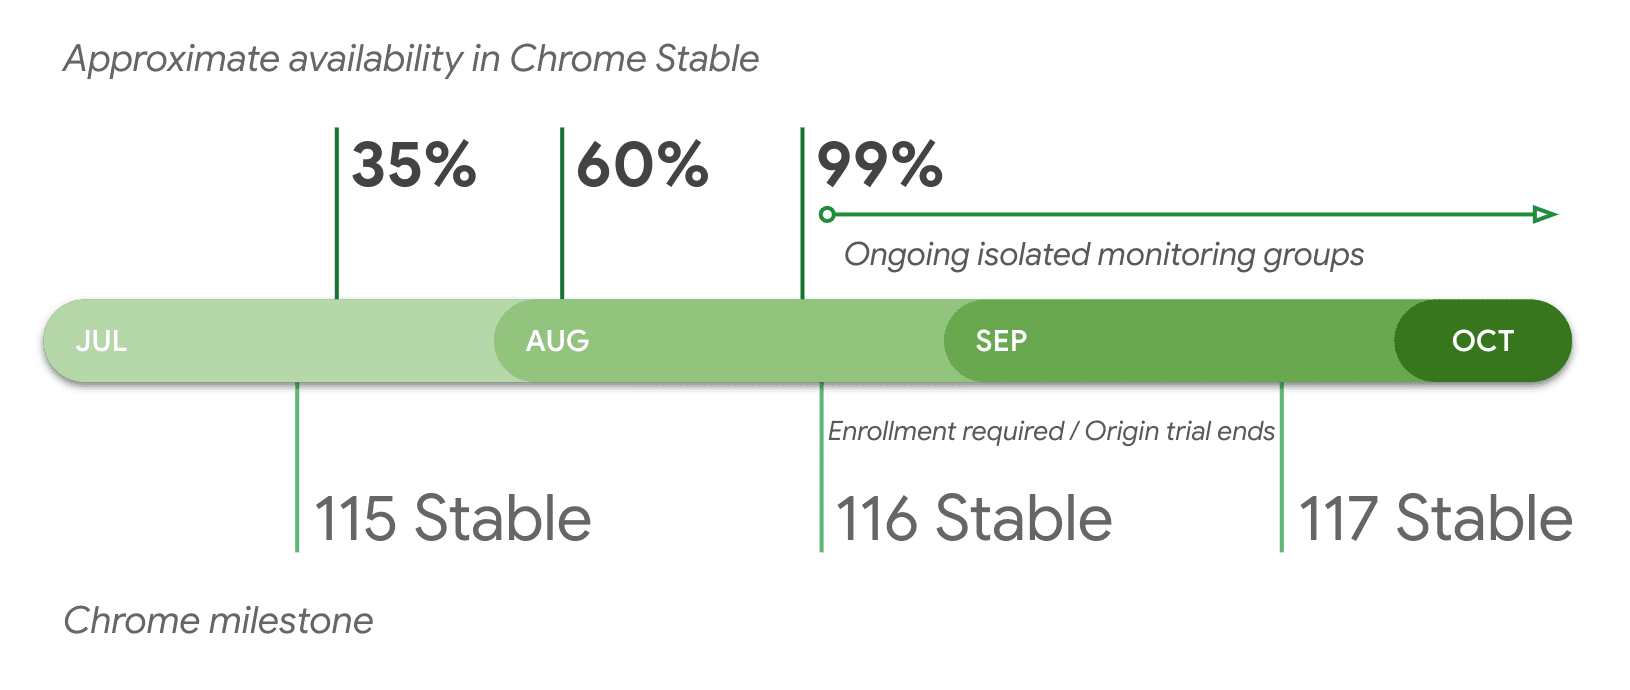 Phạm vi cung cấp gần đúng trong bản chính thức của Chrome theo phiên bản.